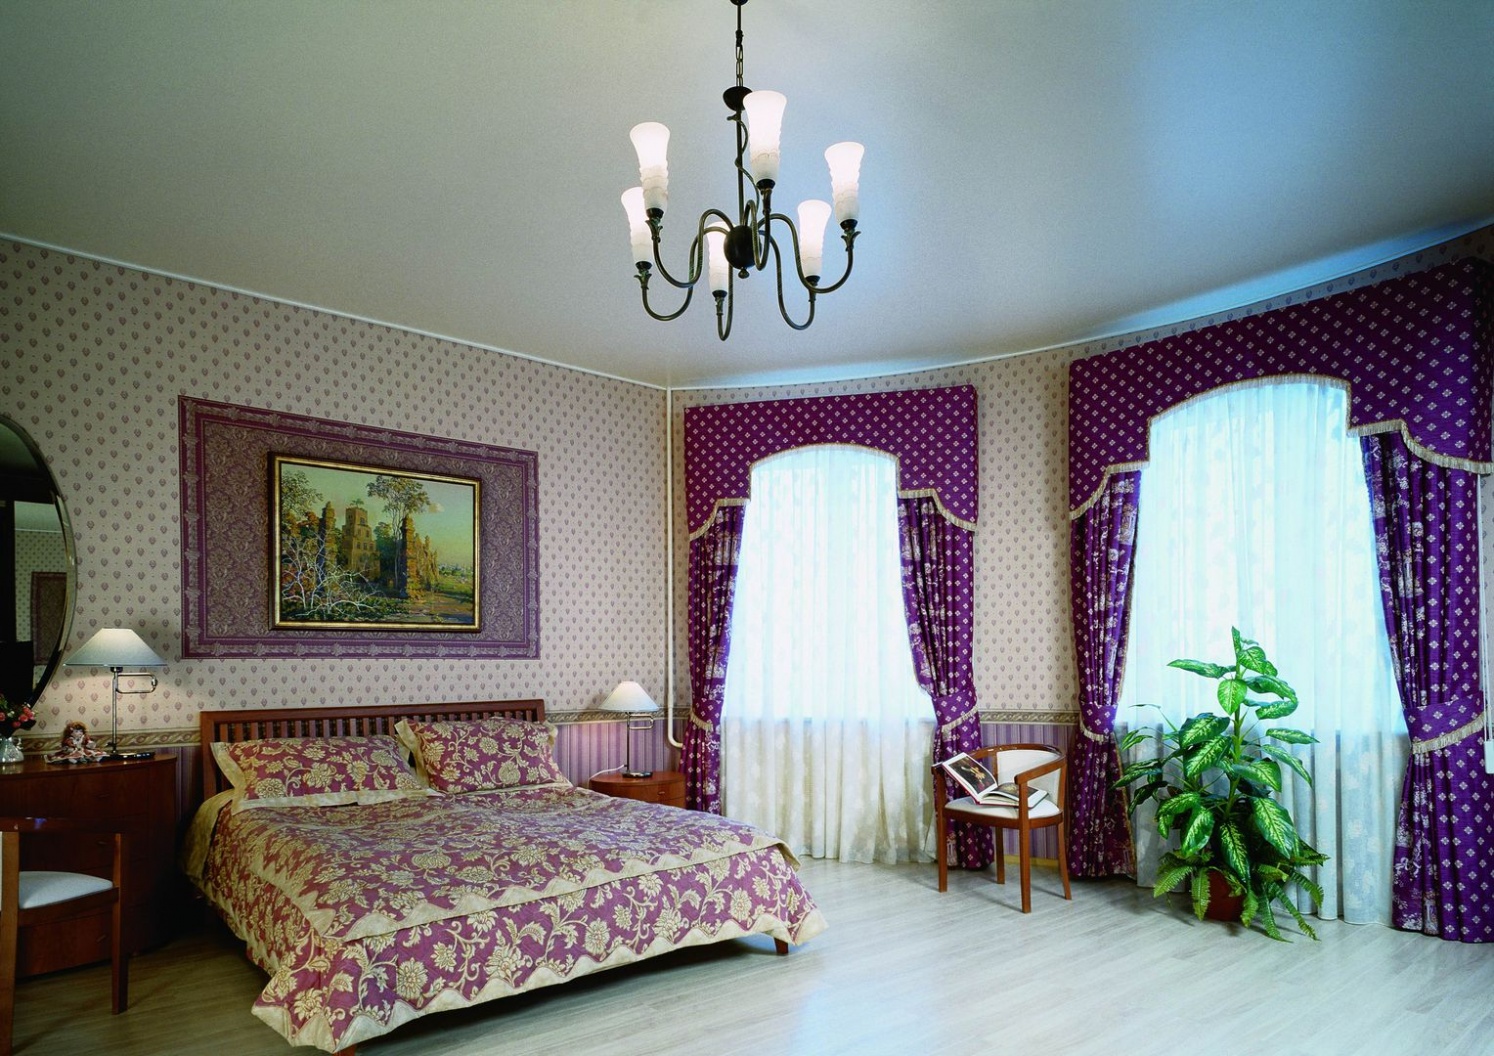 Сатиновые натяжные потолки в интерьере спальной комнаты, спокойный светлый потолок